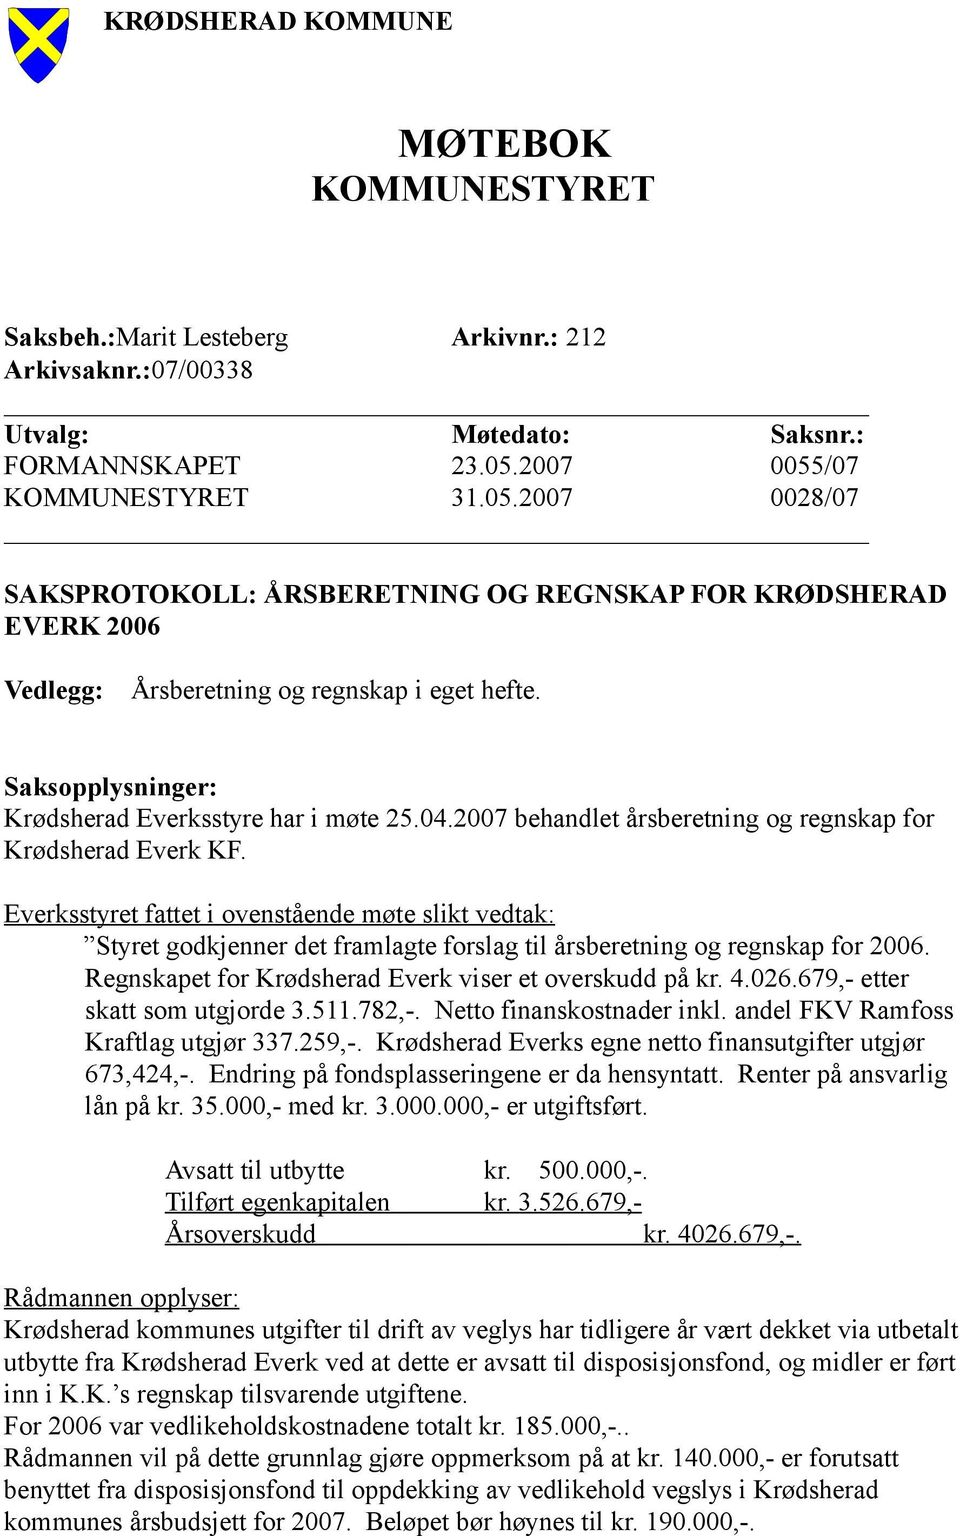 Saksopplysninger: Krødsherad Everksstyre har i møte 25.04.2007 behandlet årsberetning og regnskap for Krødsherad Everk KF.